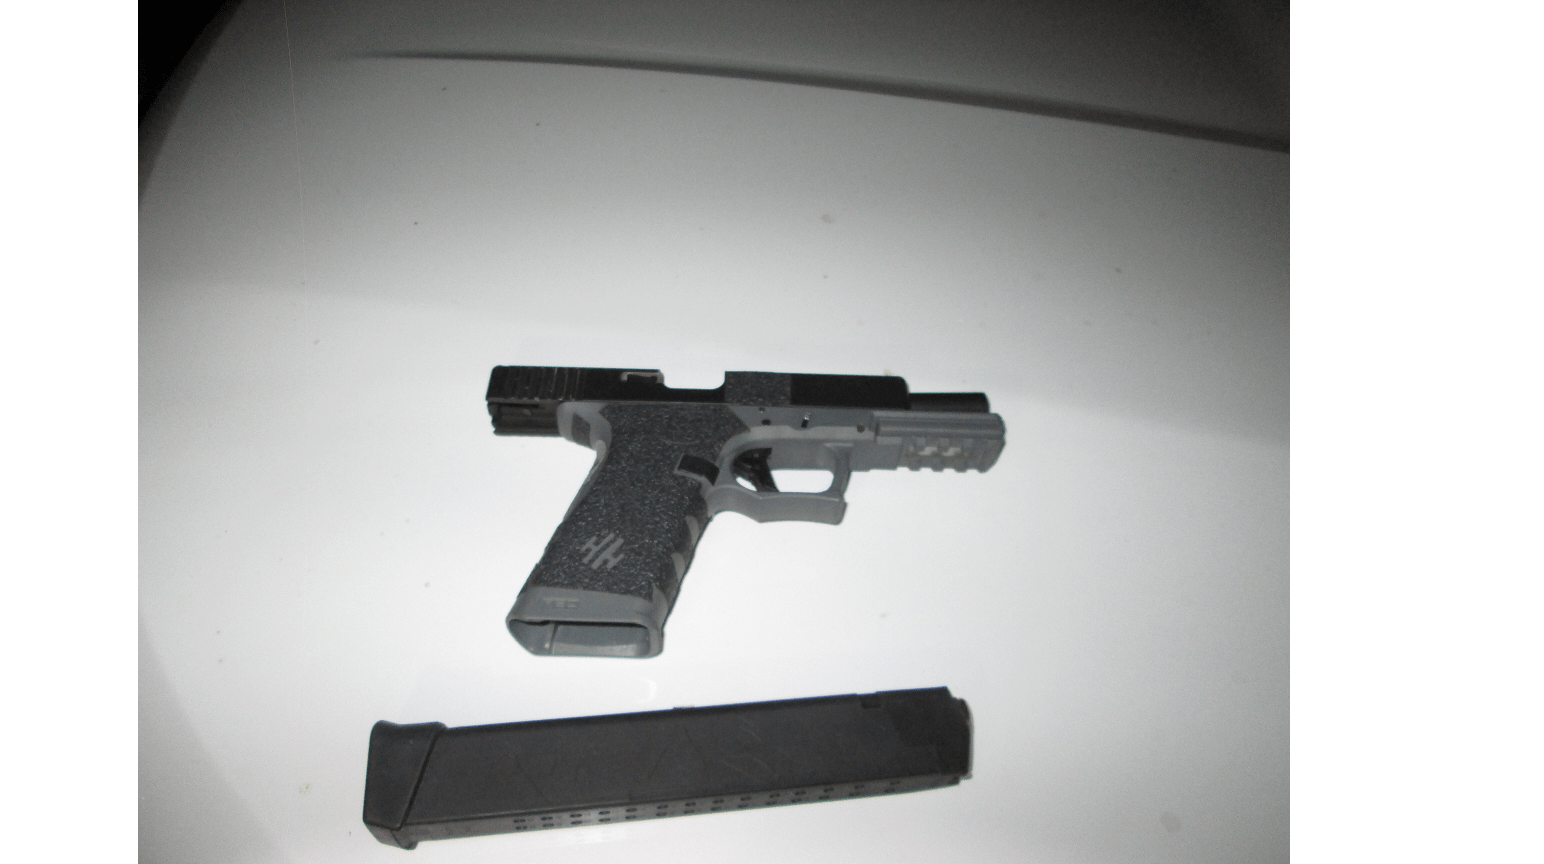 ghost-gun-found-8-7-21-mendocino-county-sheriffs-office